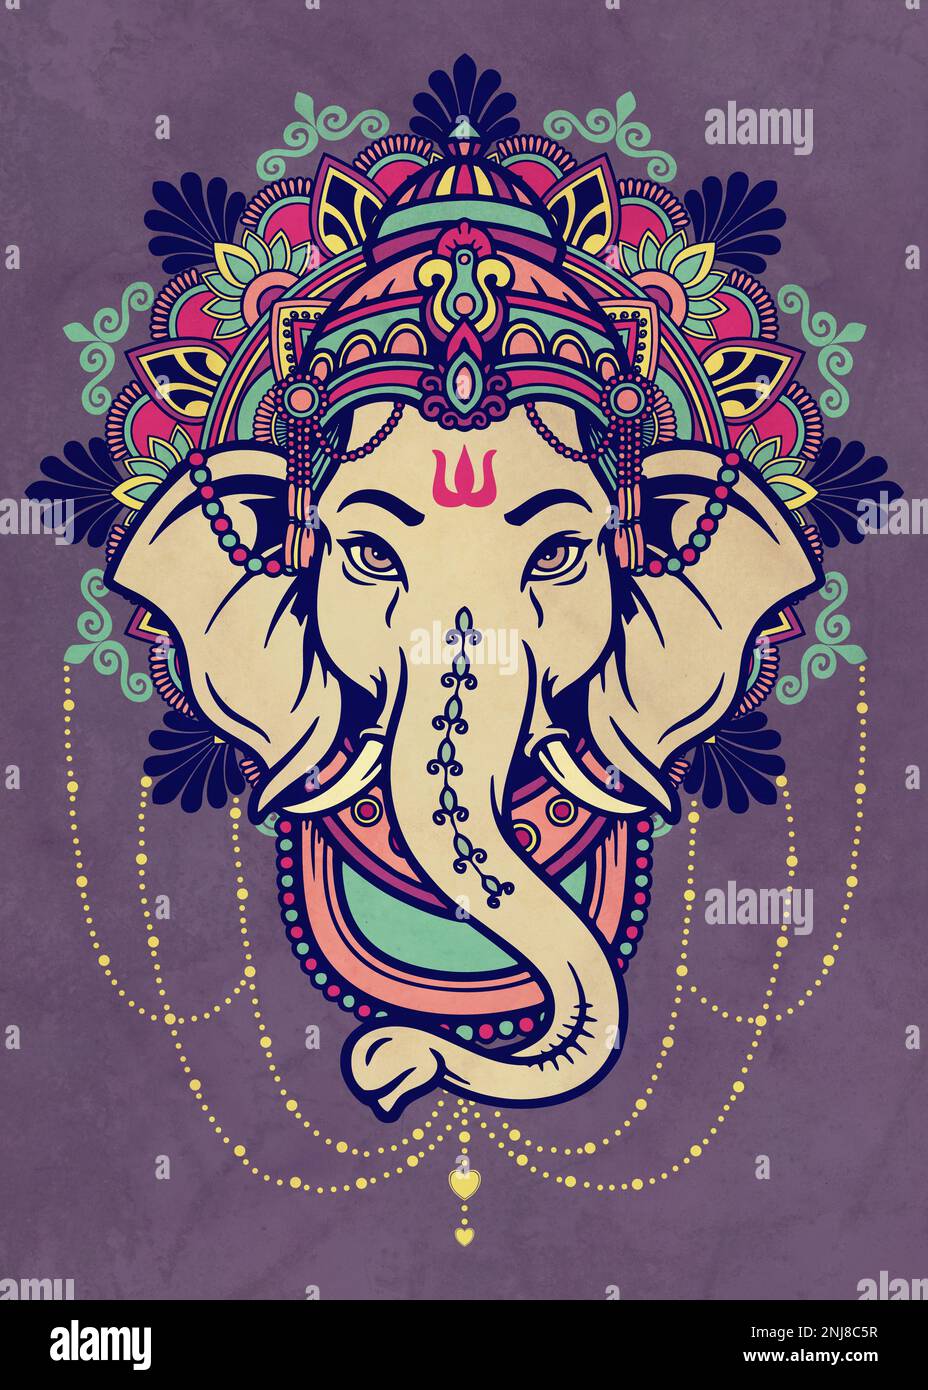 Lord Ganesha - Indian Elephant God Stock Photo